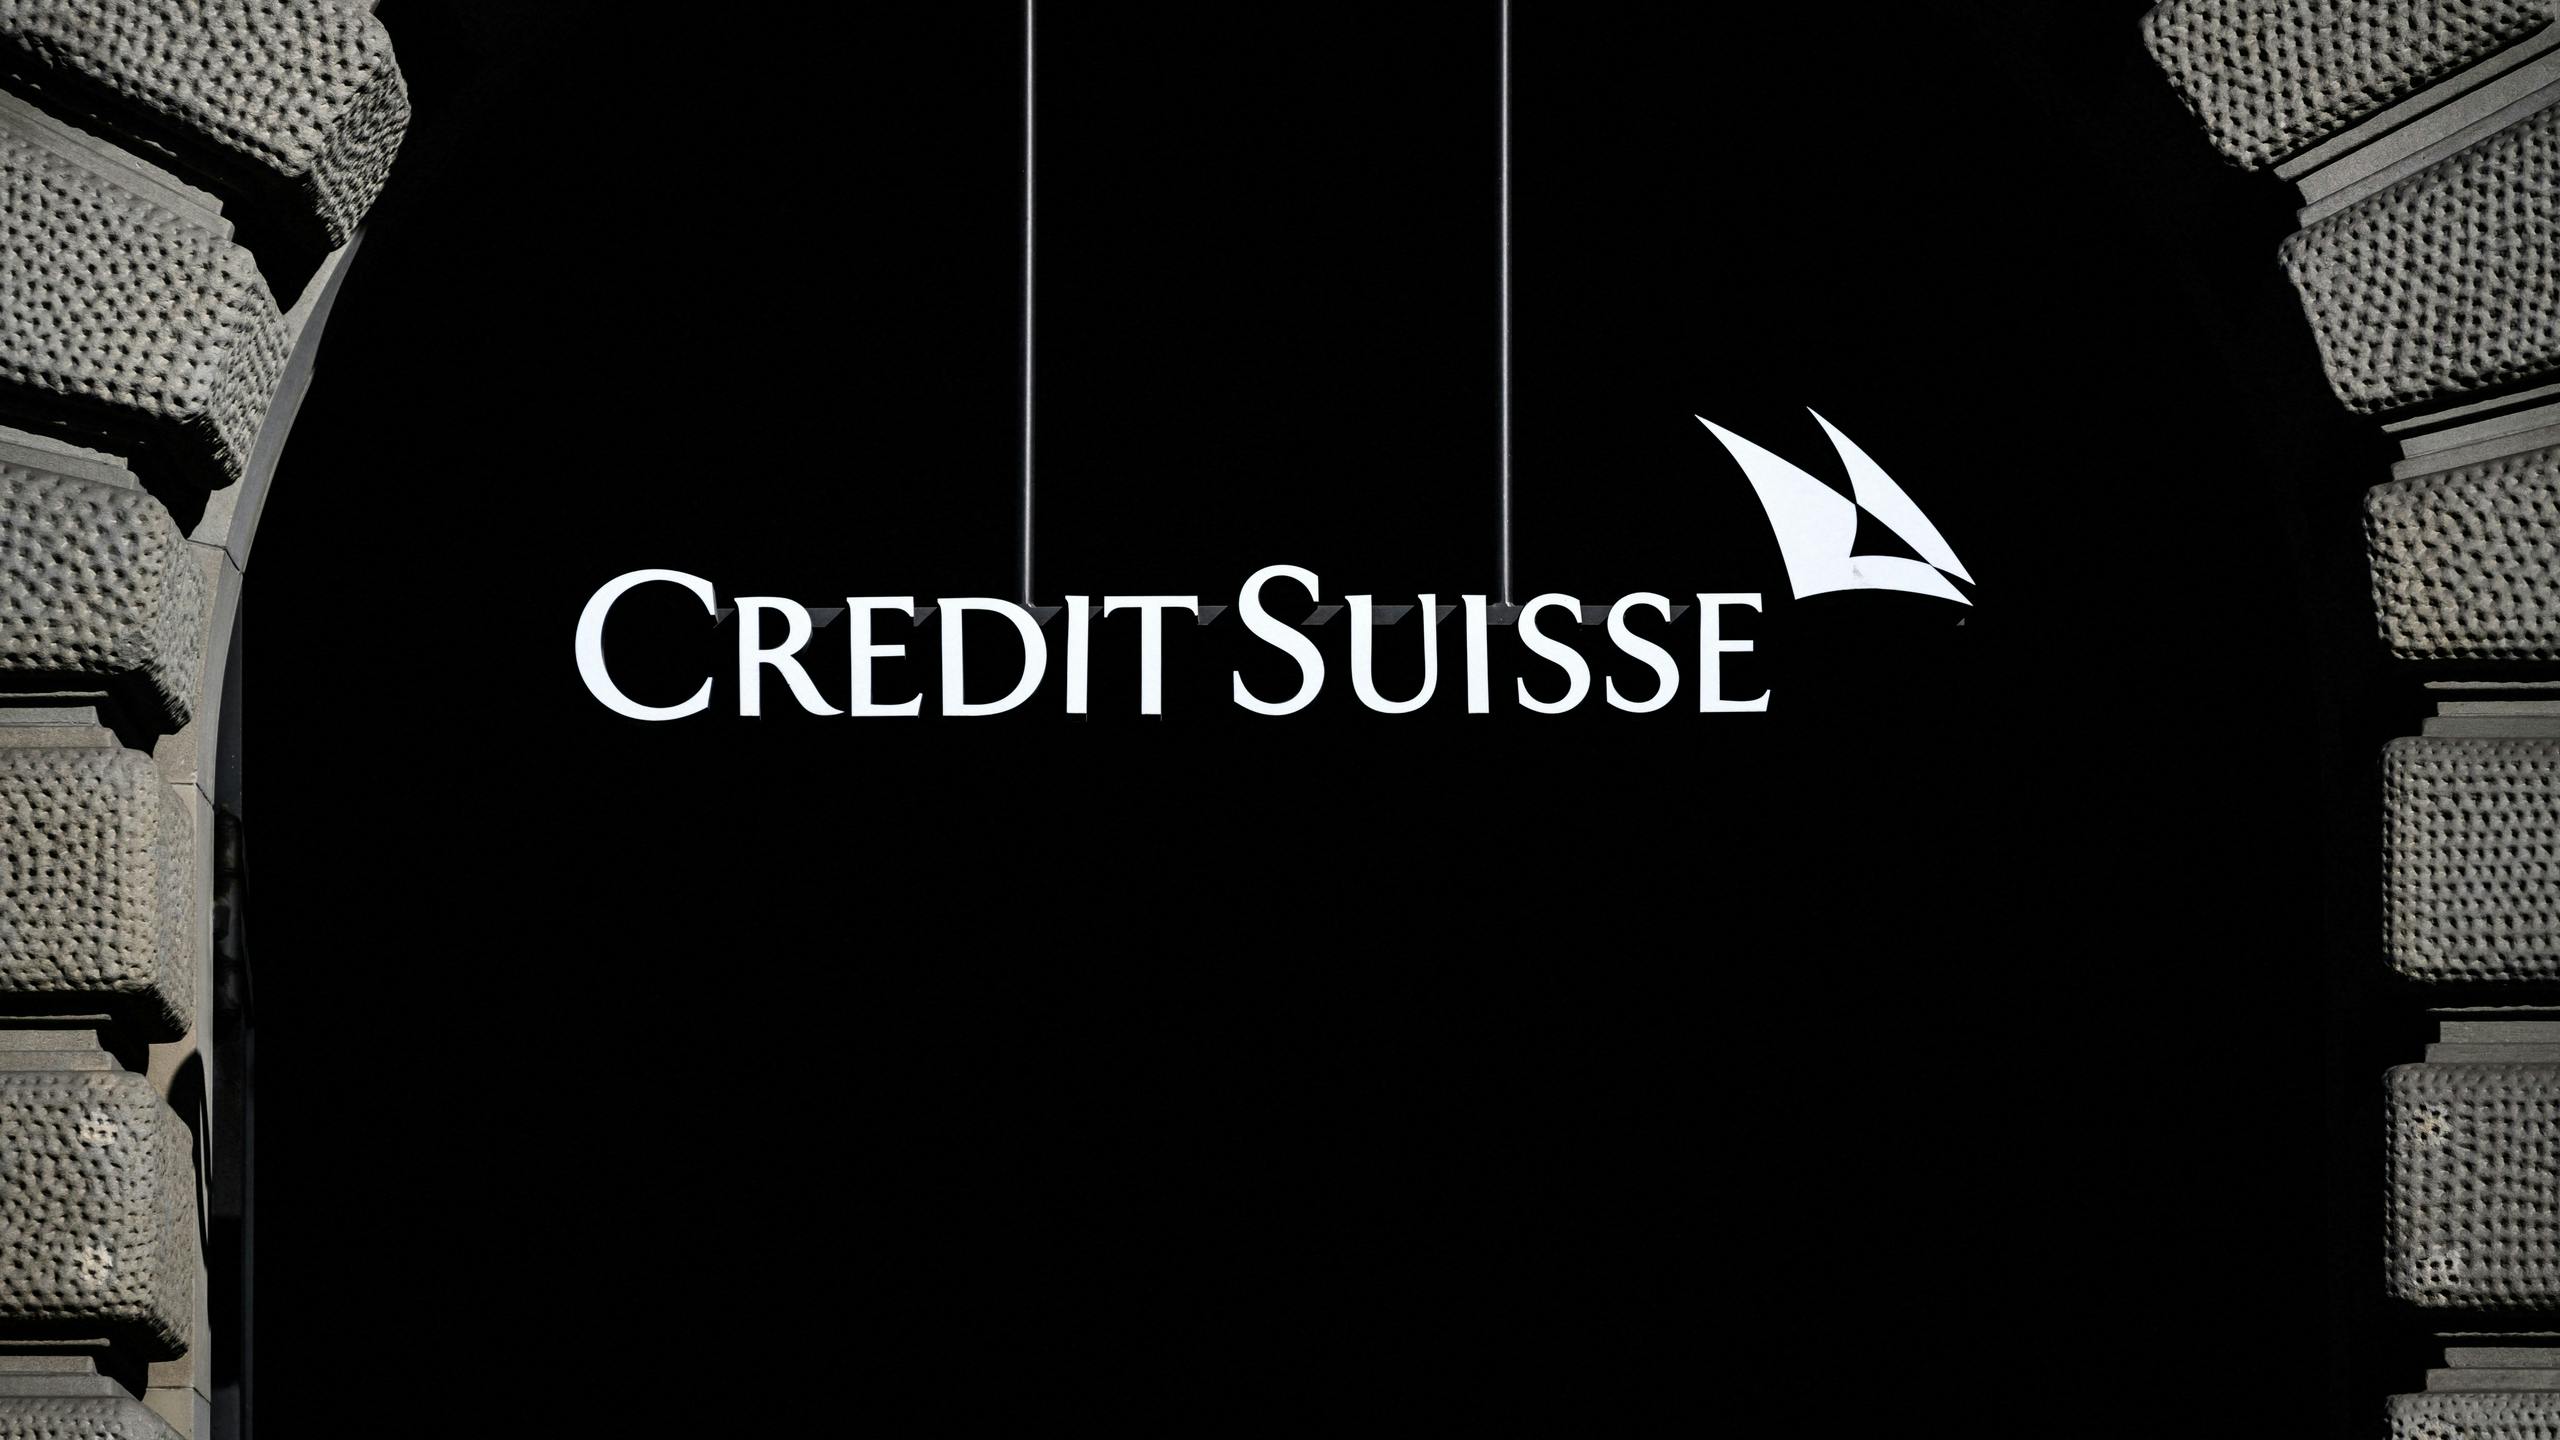 Staat Credit Suisse op omvallen, of niet?